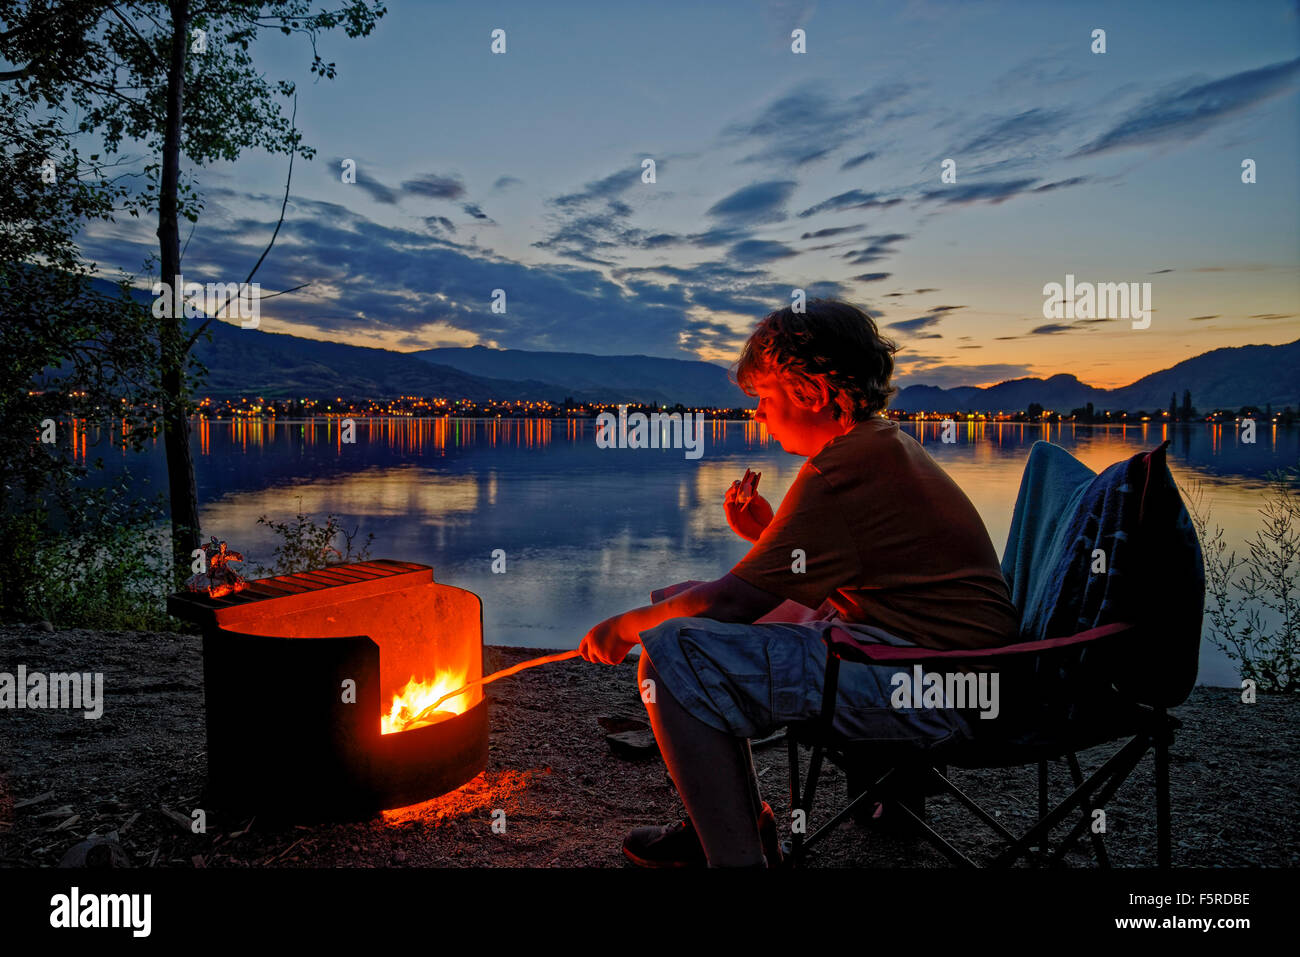 Garçon dans la guimauve rôtis au feu de camp camping Lakeshore, sẁiẁs Provincial Park, Osoyoos, Colombie-Britannique, Canada Banque D'Images